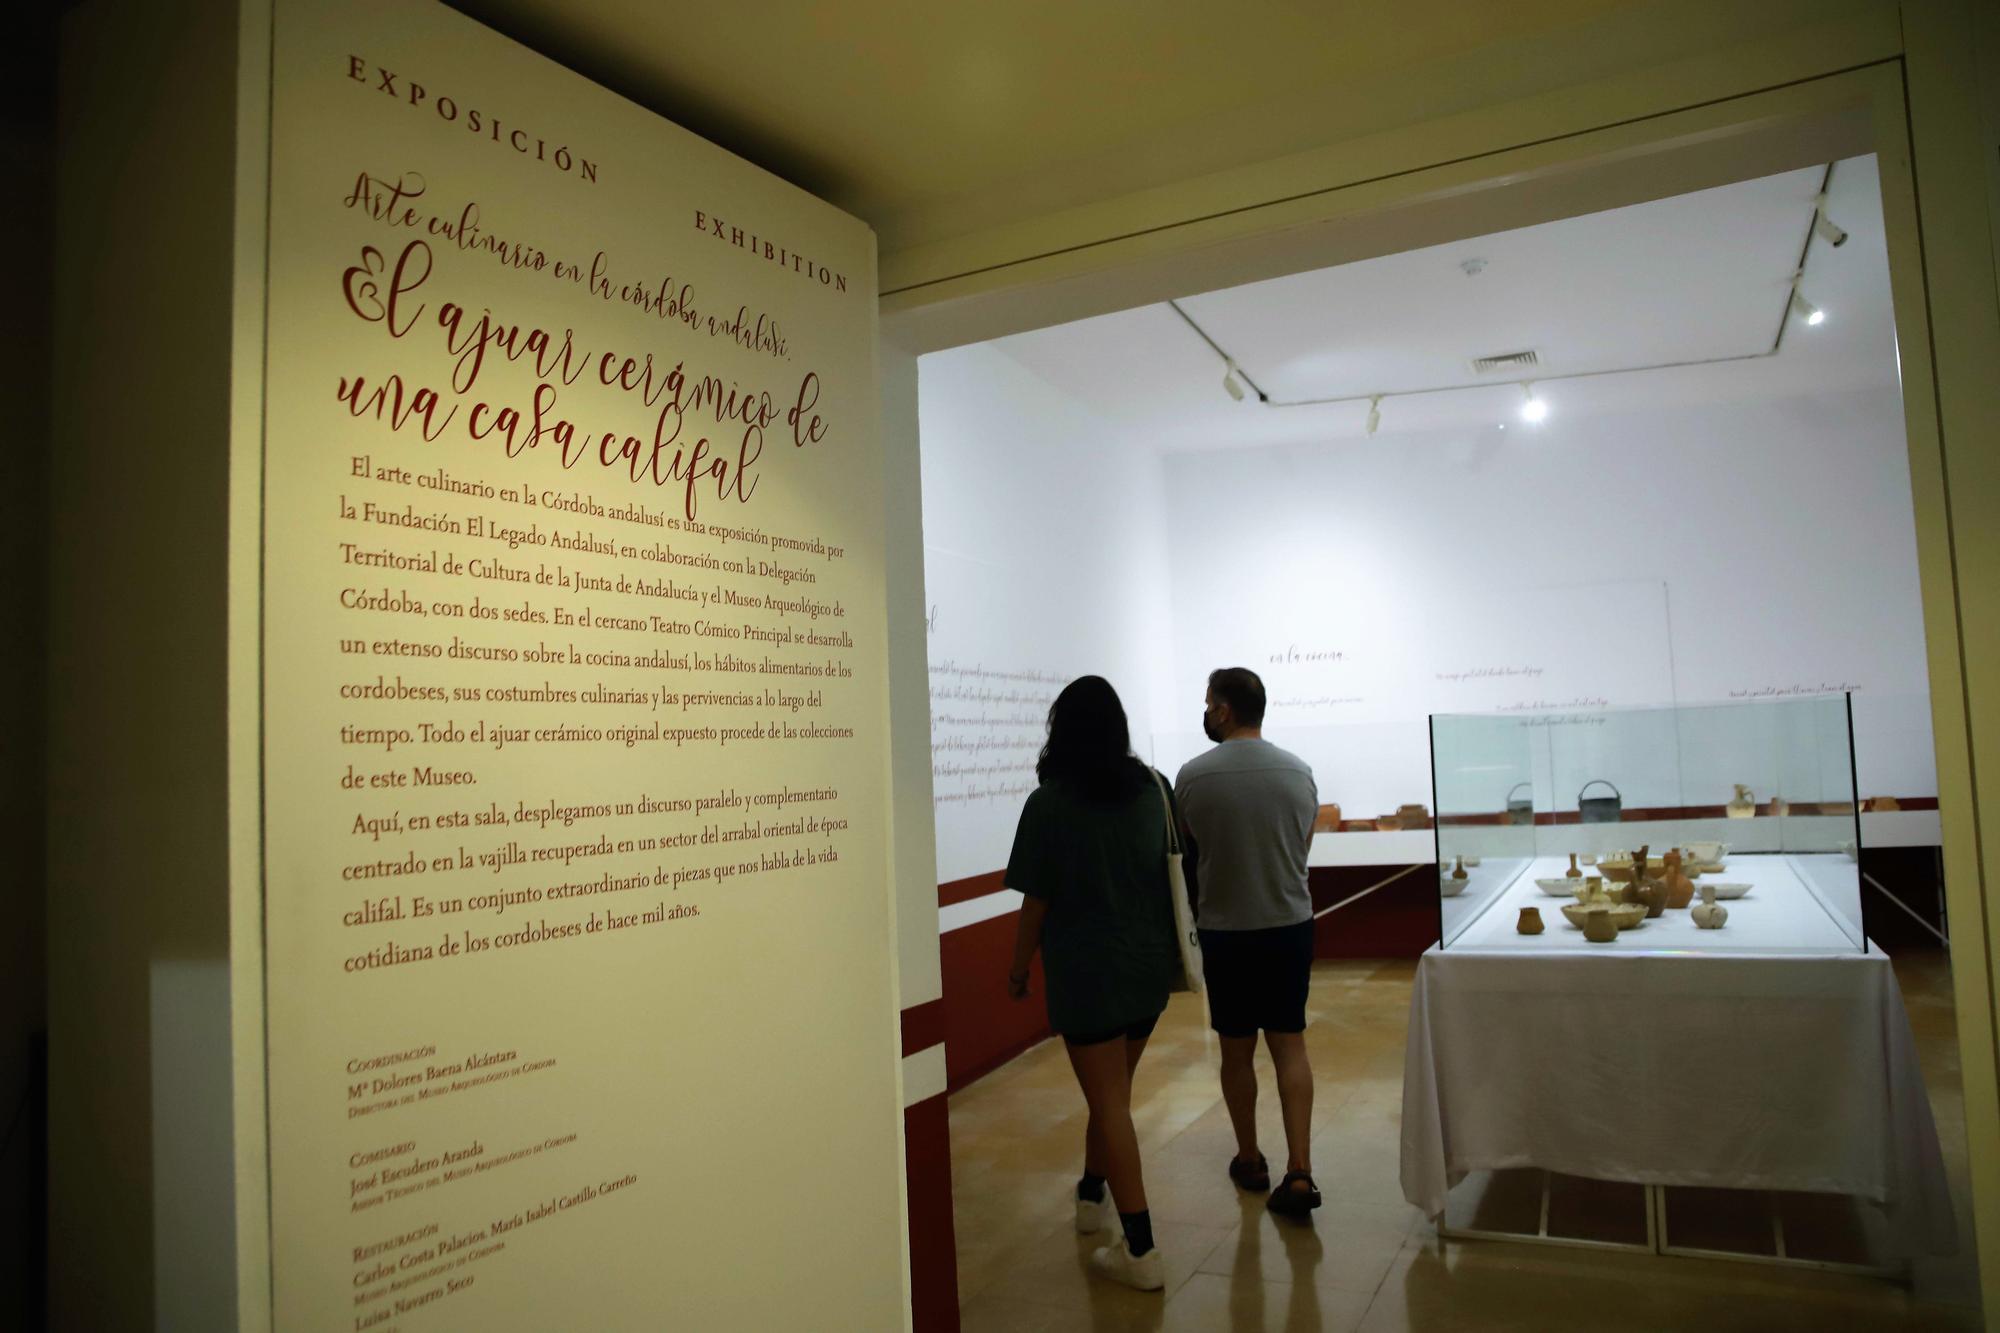 Exposición "Arte Culinario en la Córdoba Andalusí” en el Teatro Cómico y el Museo Arqueológico